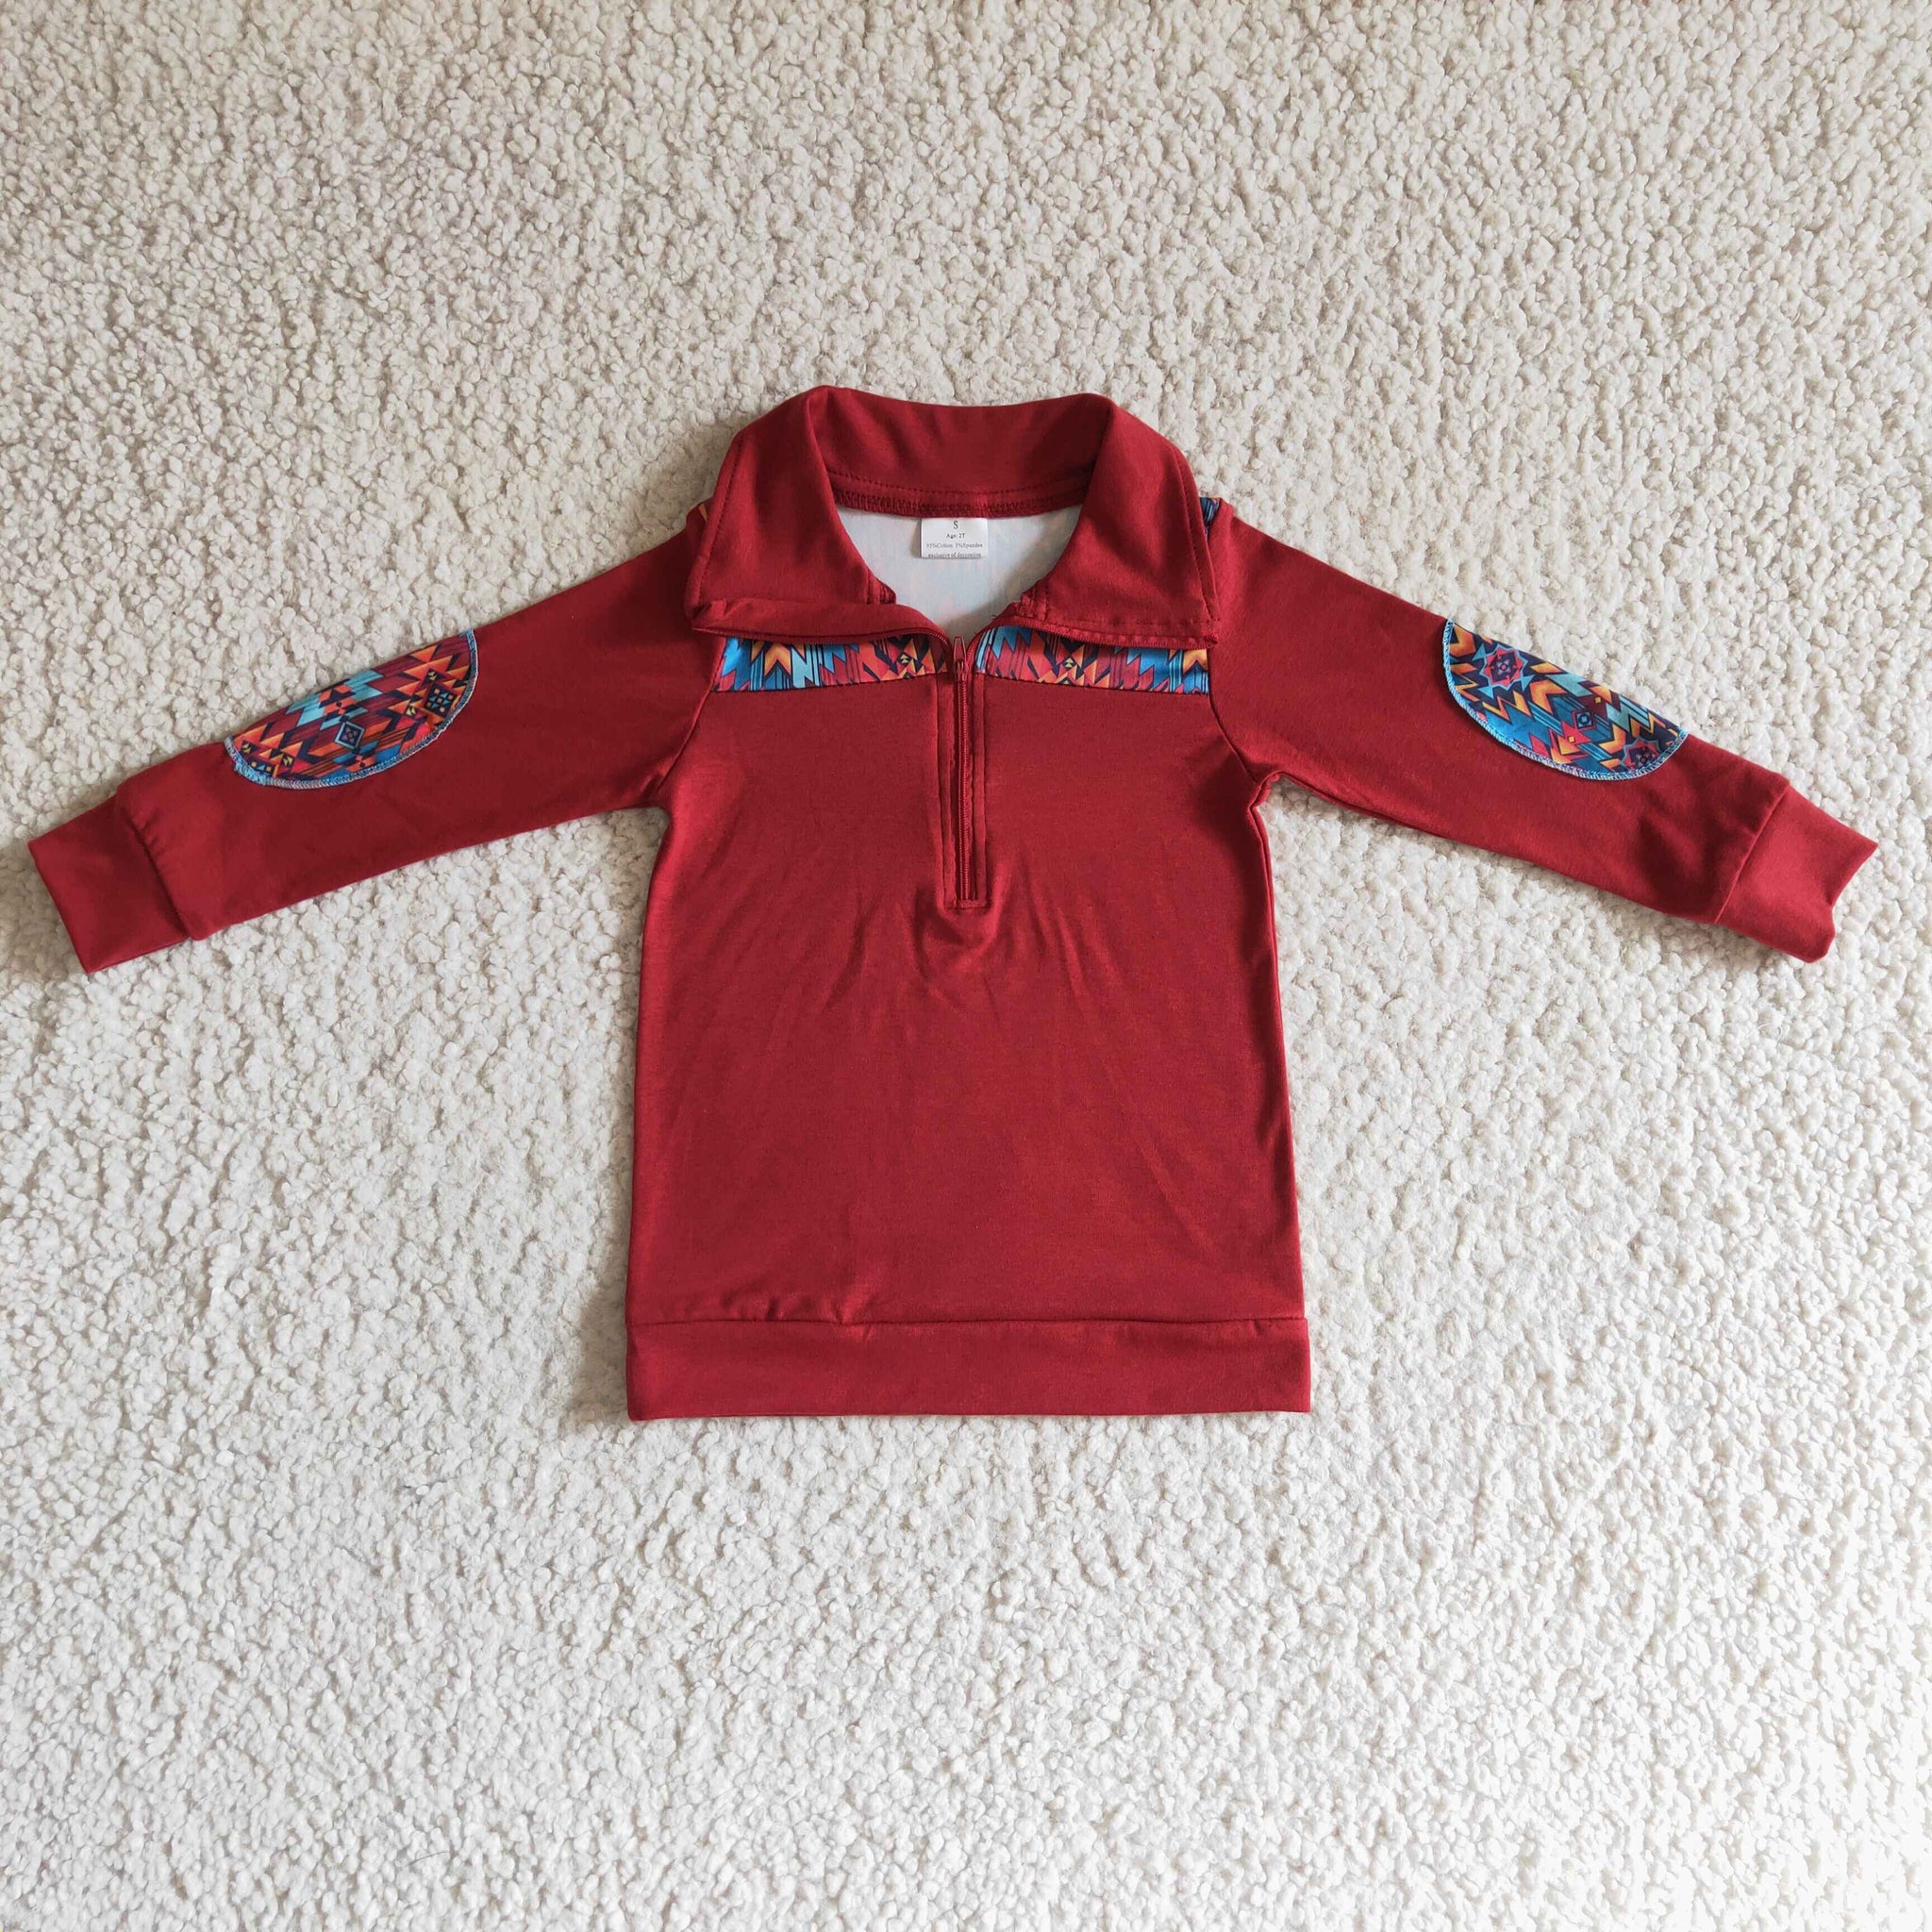 BT0080 baby boy clothes zipper shirt winter top